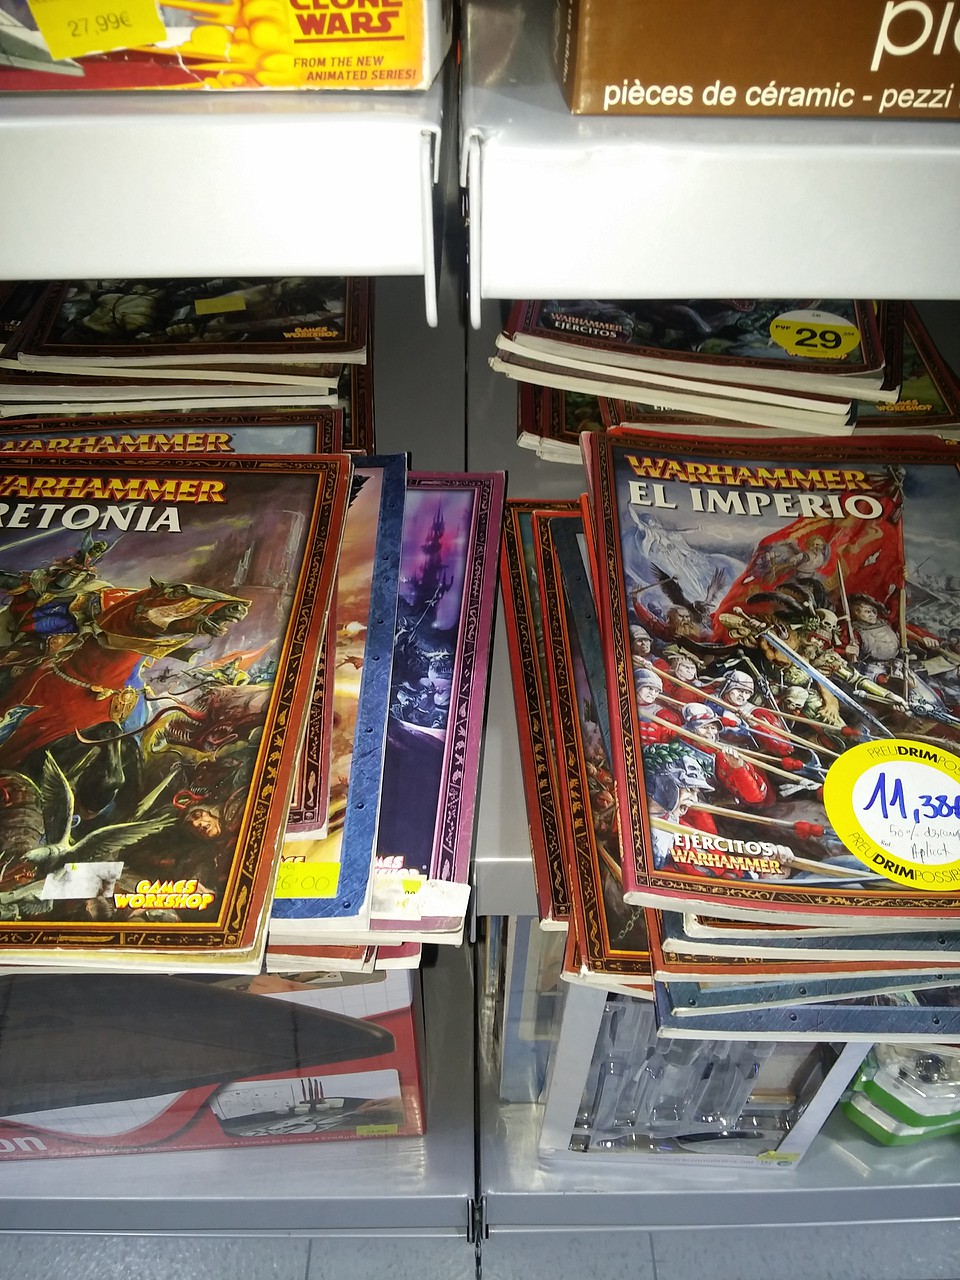 Warhammer Aquí Ofertas Warhammeras en Baricentro - Feedback, Guías, en la CV y tiendas